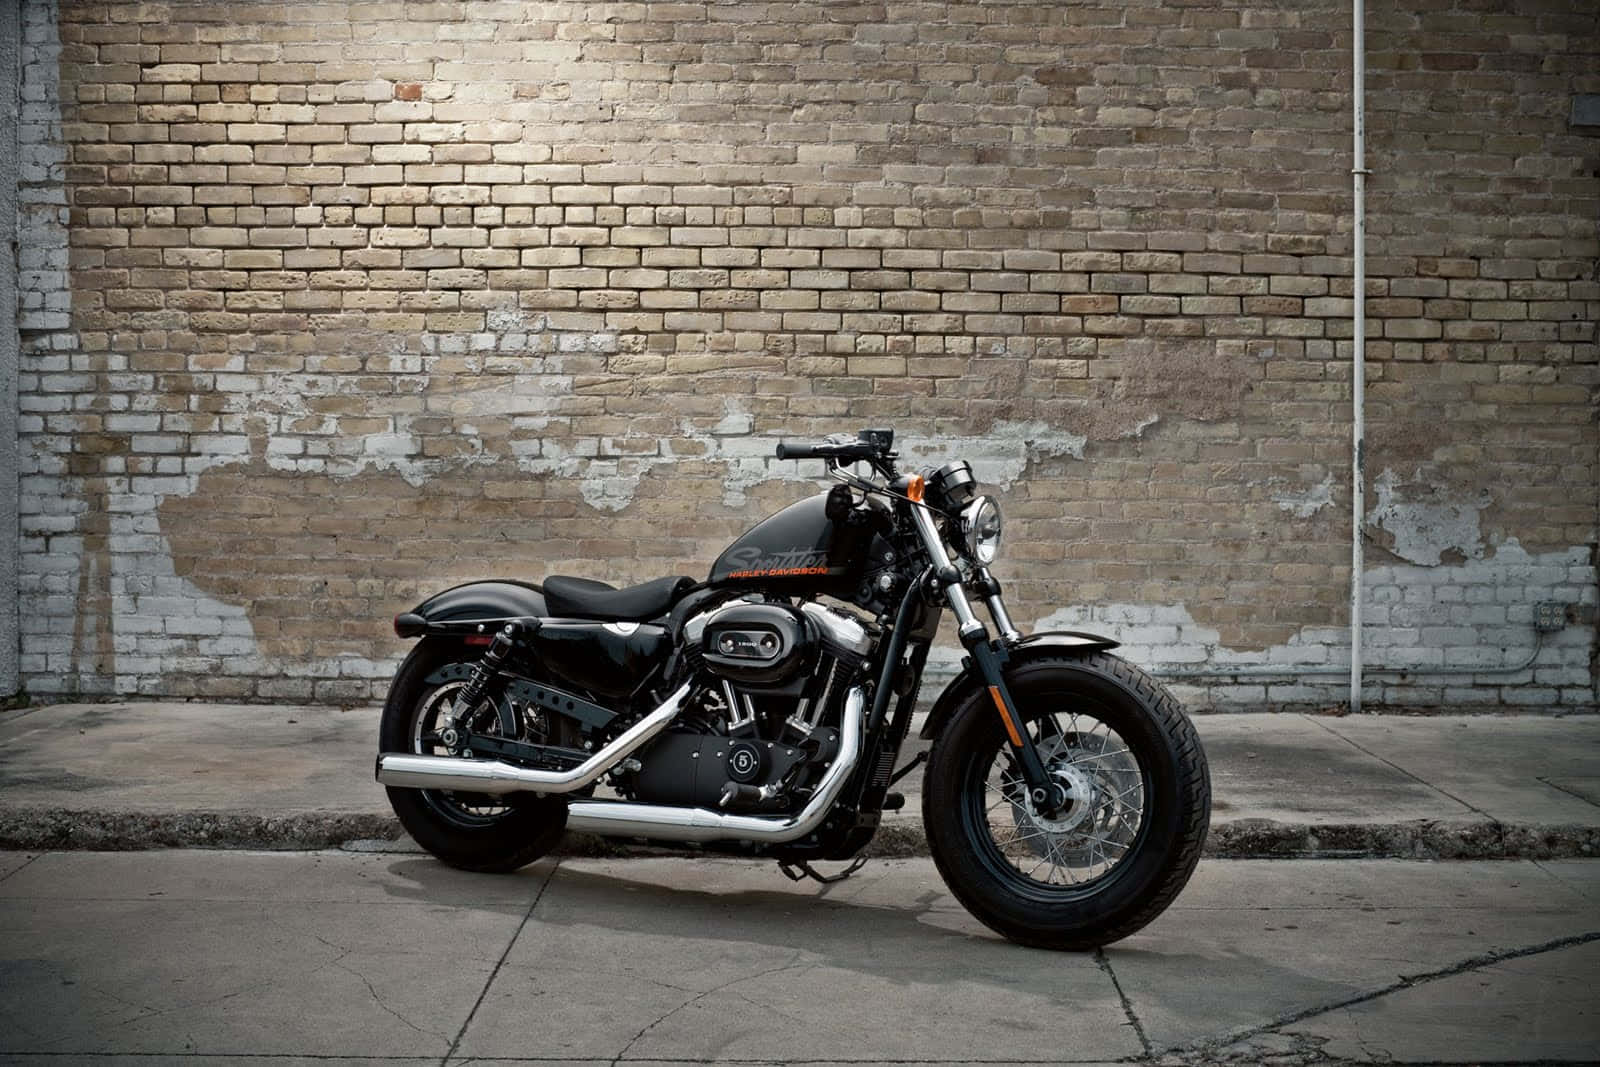 Harley Davidson Iron 1200 Motorcycle Background